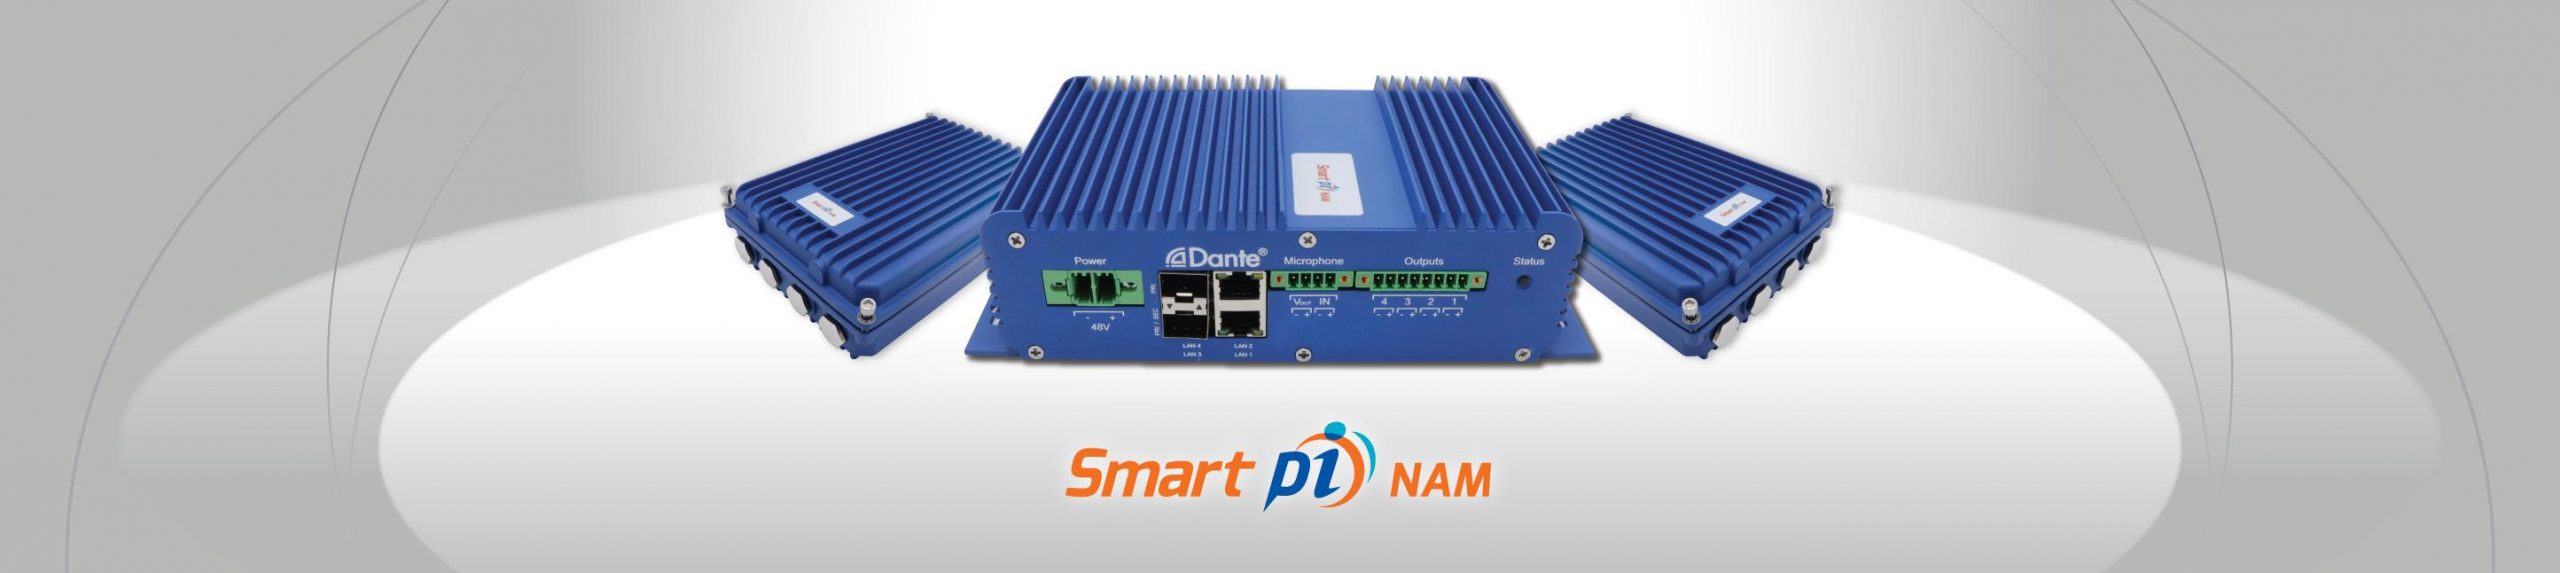 Smart pi NAM Updates